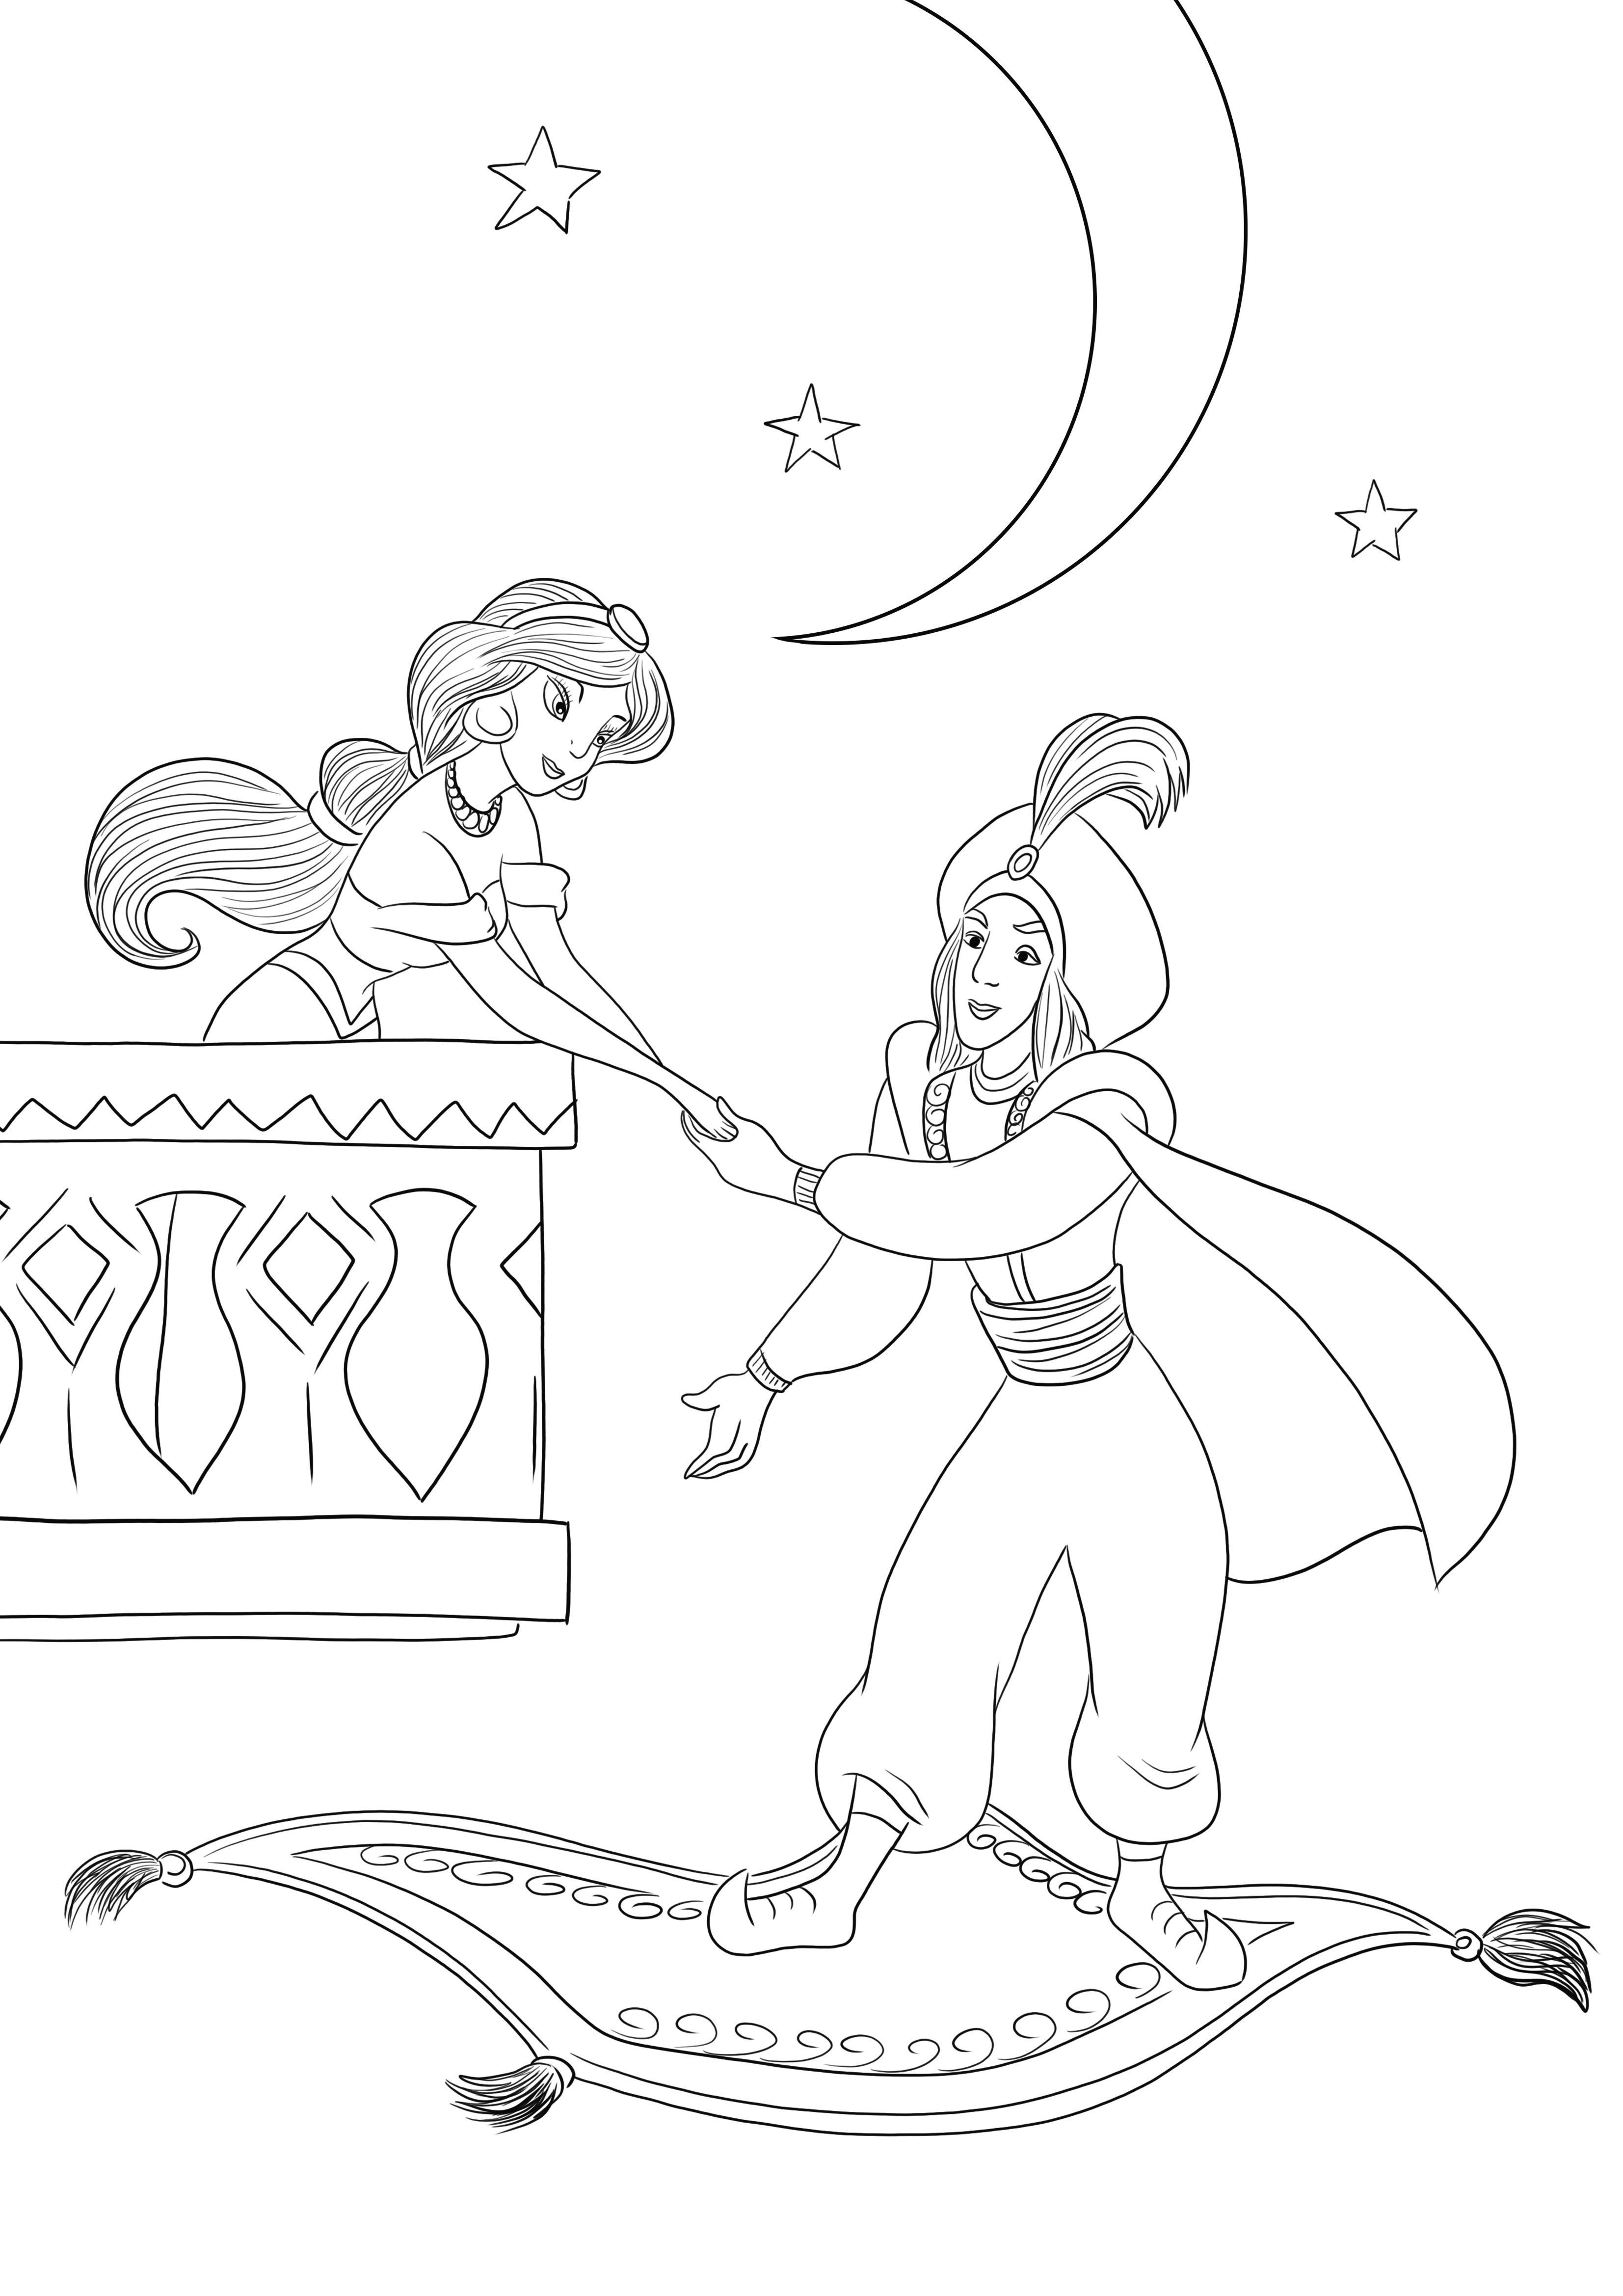 O imagine de colorat gratuită a prințului Ali întâlnindu-se cu Jasmine pentru descărcare sau imprimare